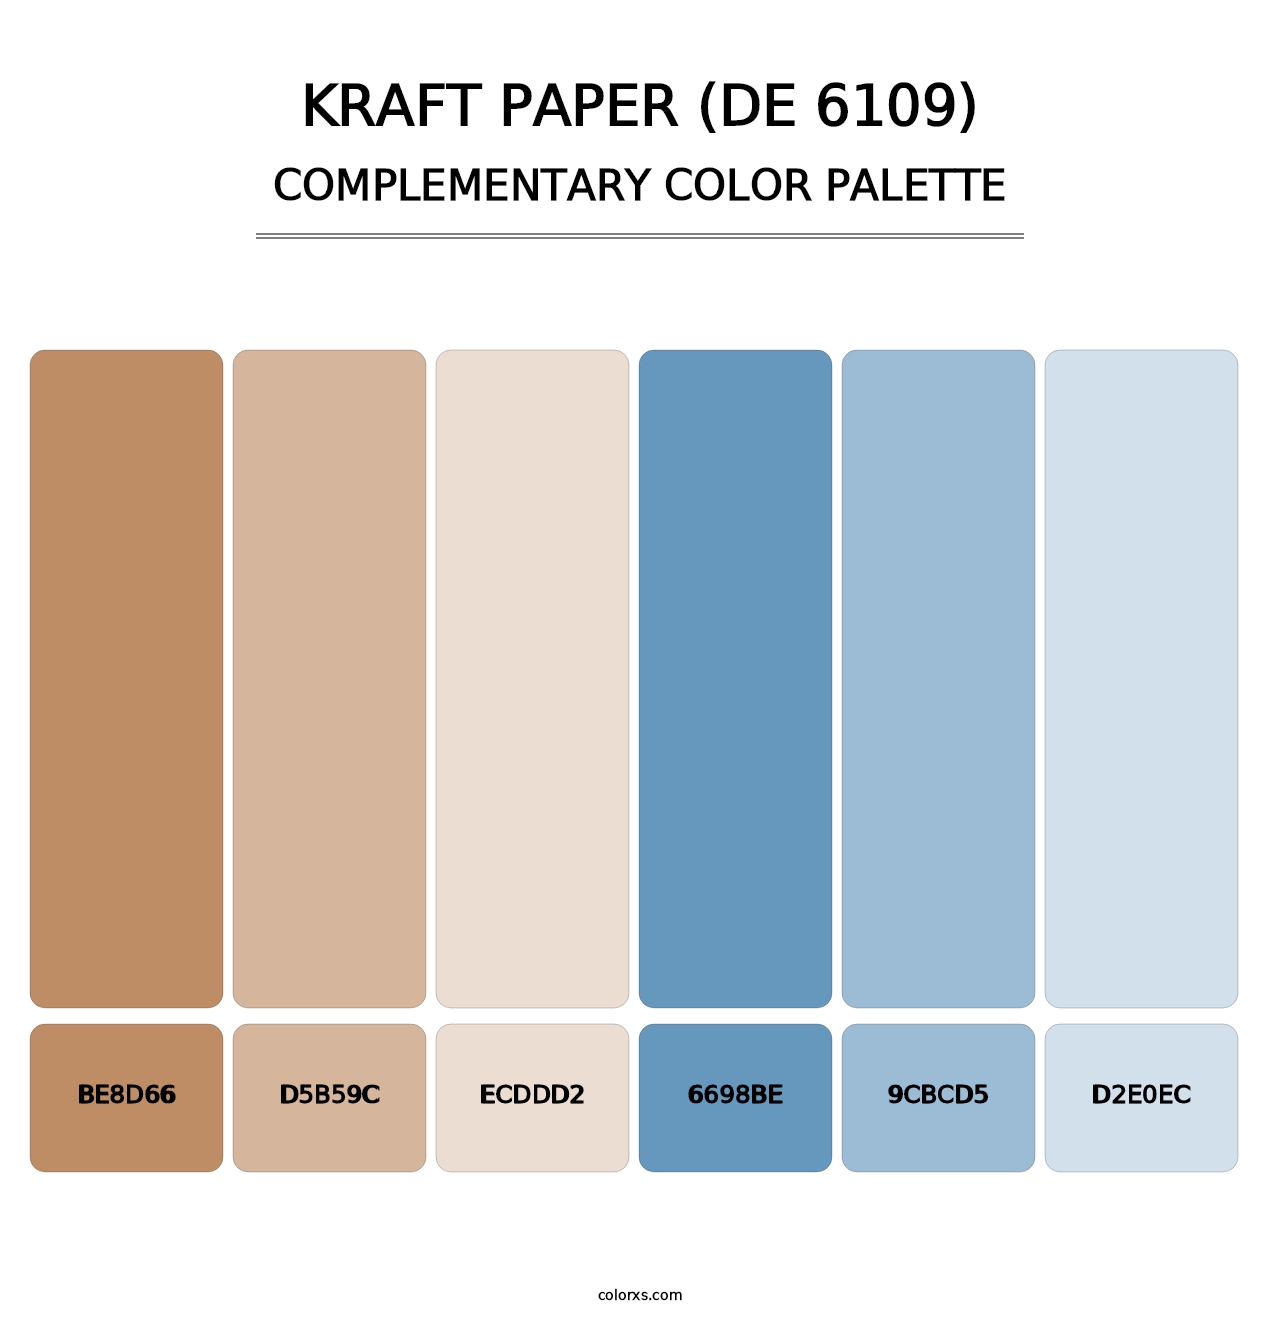 Kraft Paper (DE 6109) - Complementary Color Palette